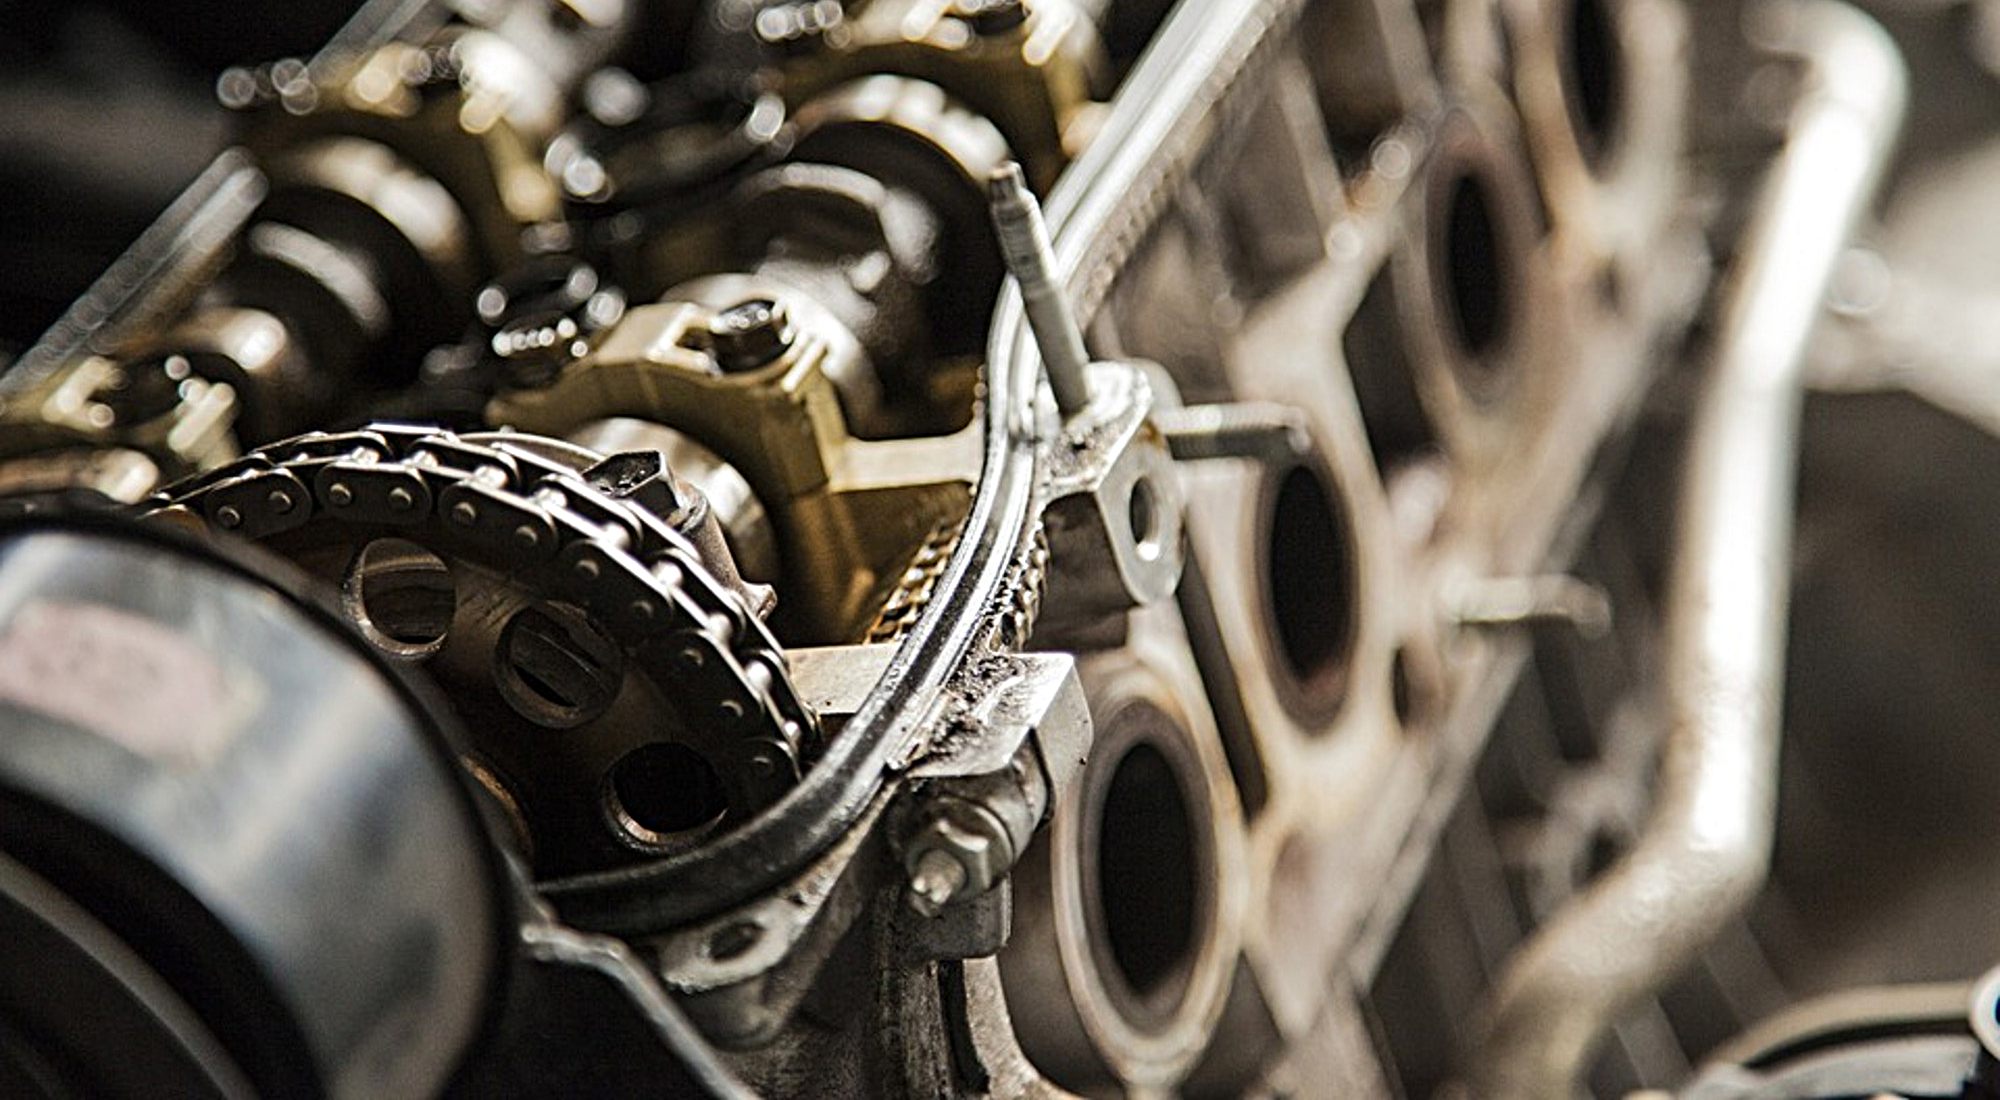 revisione turbine turbo compressori rettifiche motori siena toscana